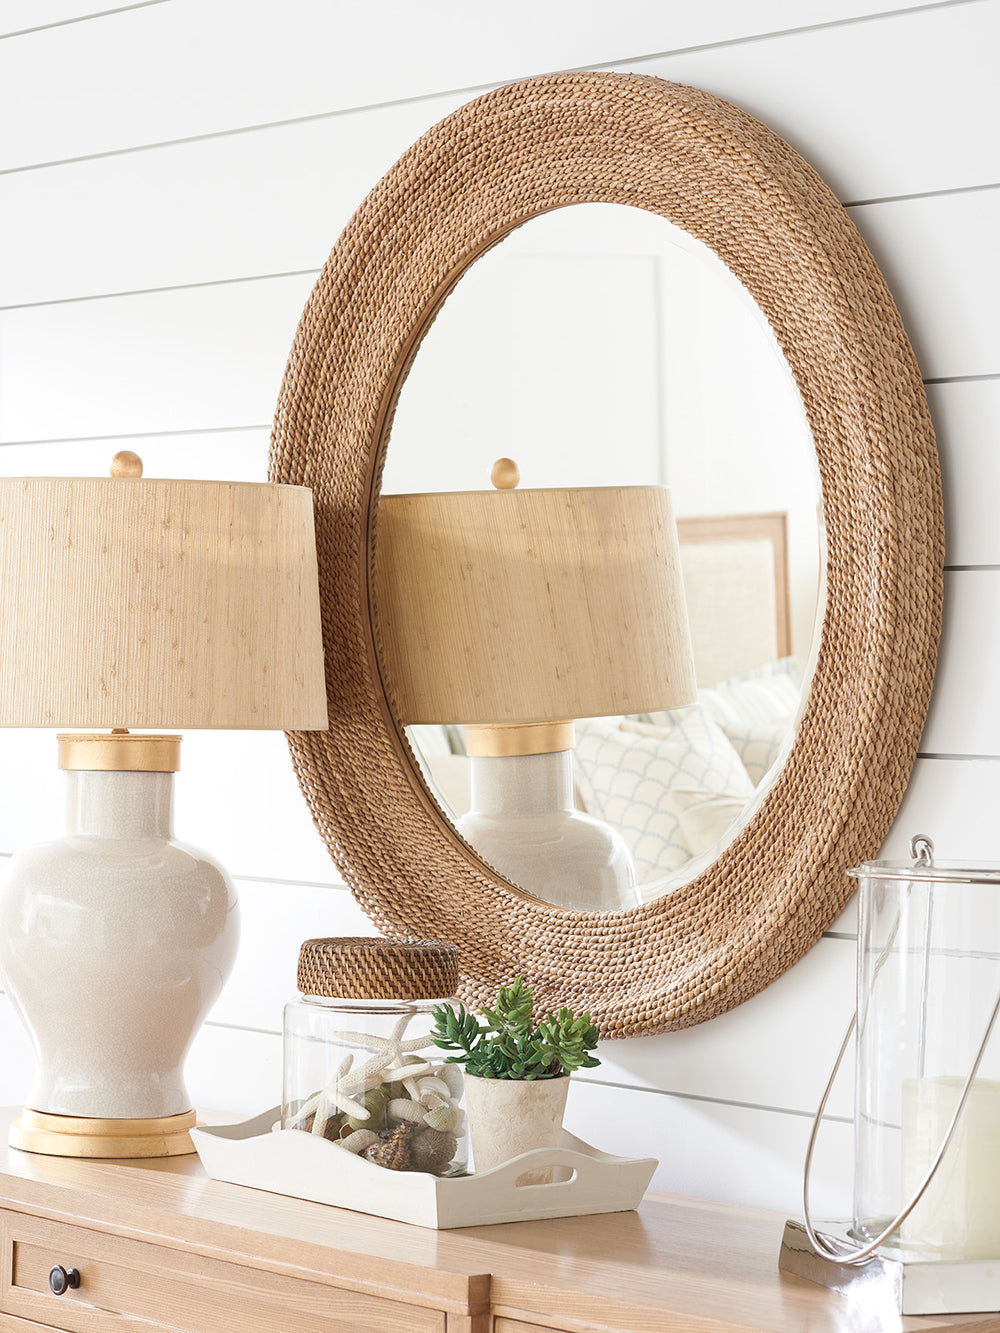 American Home Furniture | Barclay Butera  - Newport La Jolla Woven Round Mirror